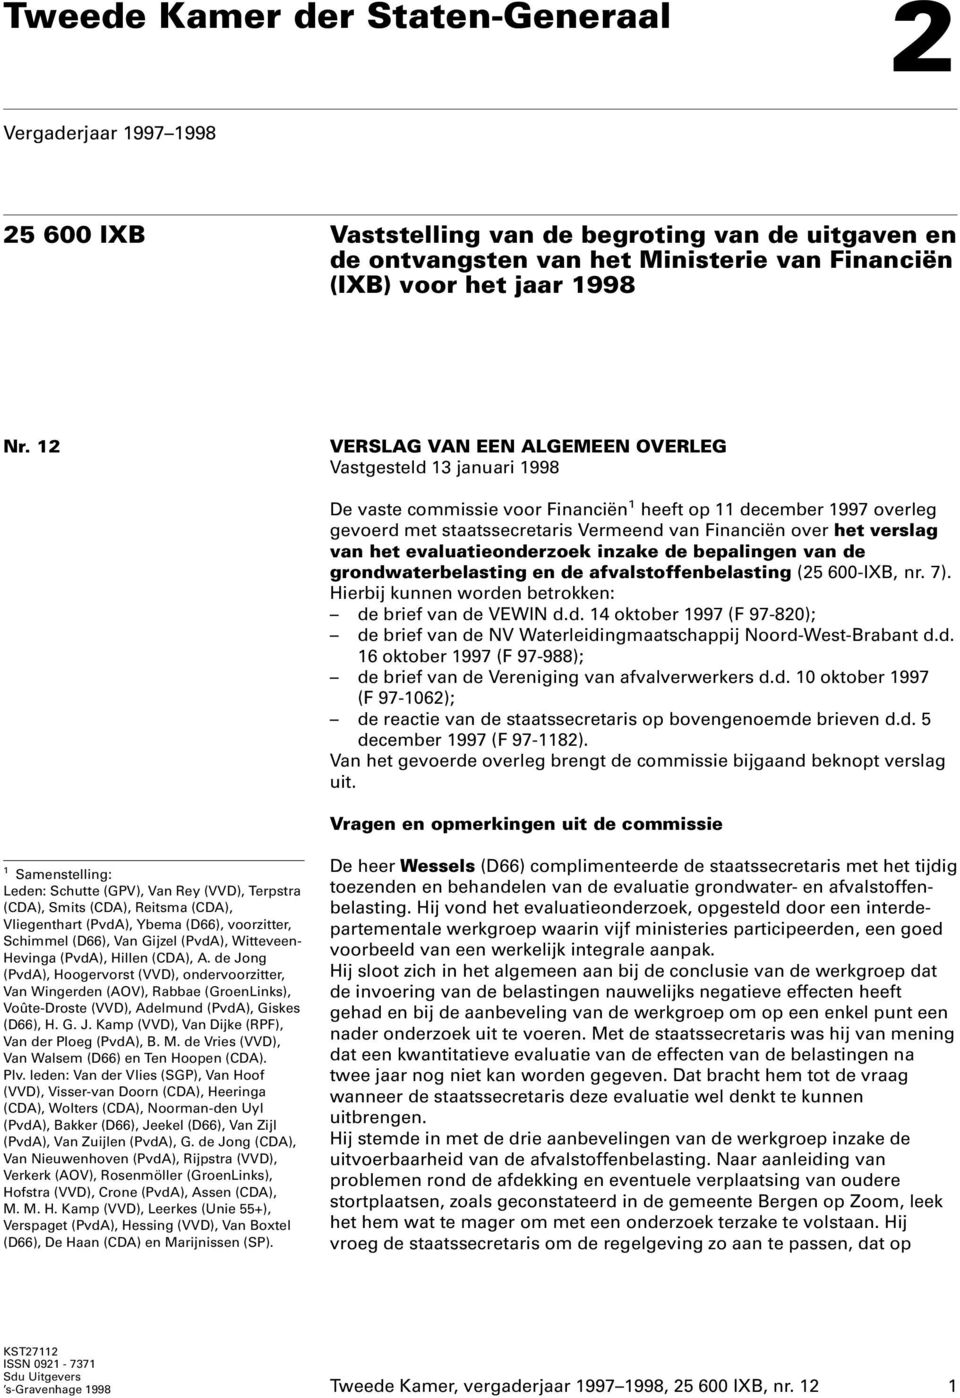 verslag van het evaluatieonderzoek inzake de bepalingen van de grondwaterbelasting en de afvalstoffenbelasting (25 600-IXB, nr. 7). Hierbij kunnen worden betrokken: de brief van de VEWIN d.d. 14 oktober 1997 (F 97-820); de brief van de NV Waterleidingmaatschappij Noord-West-Brabant d.